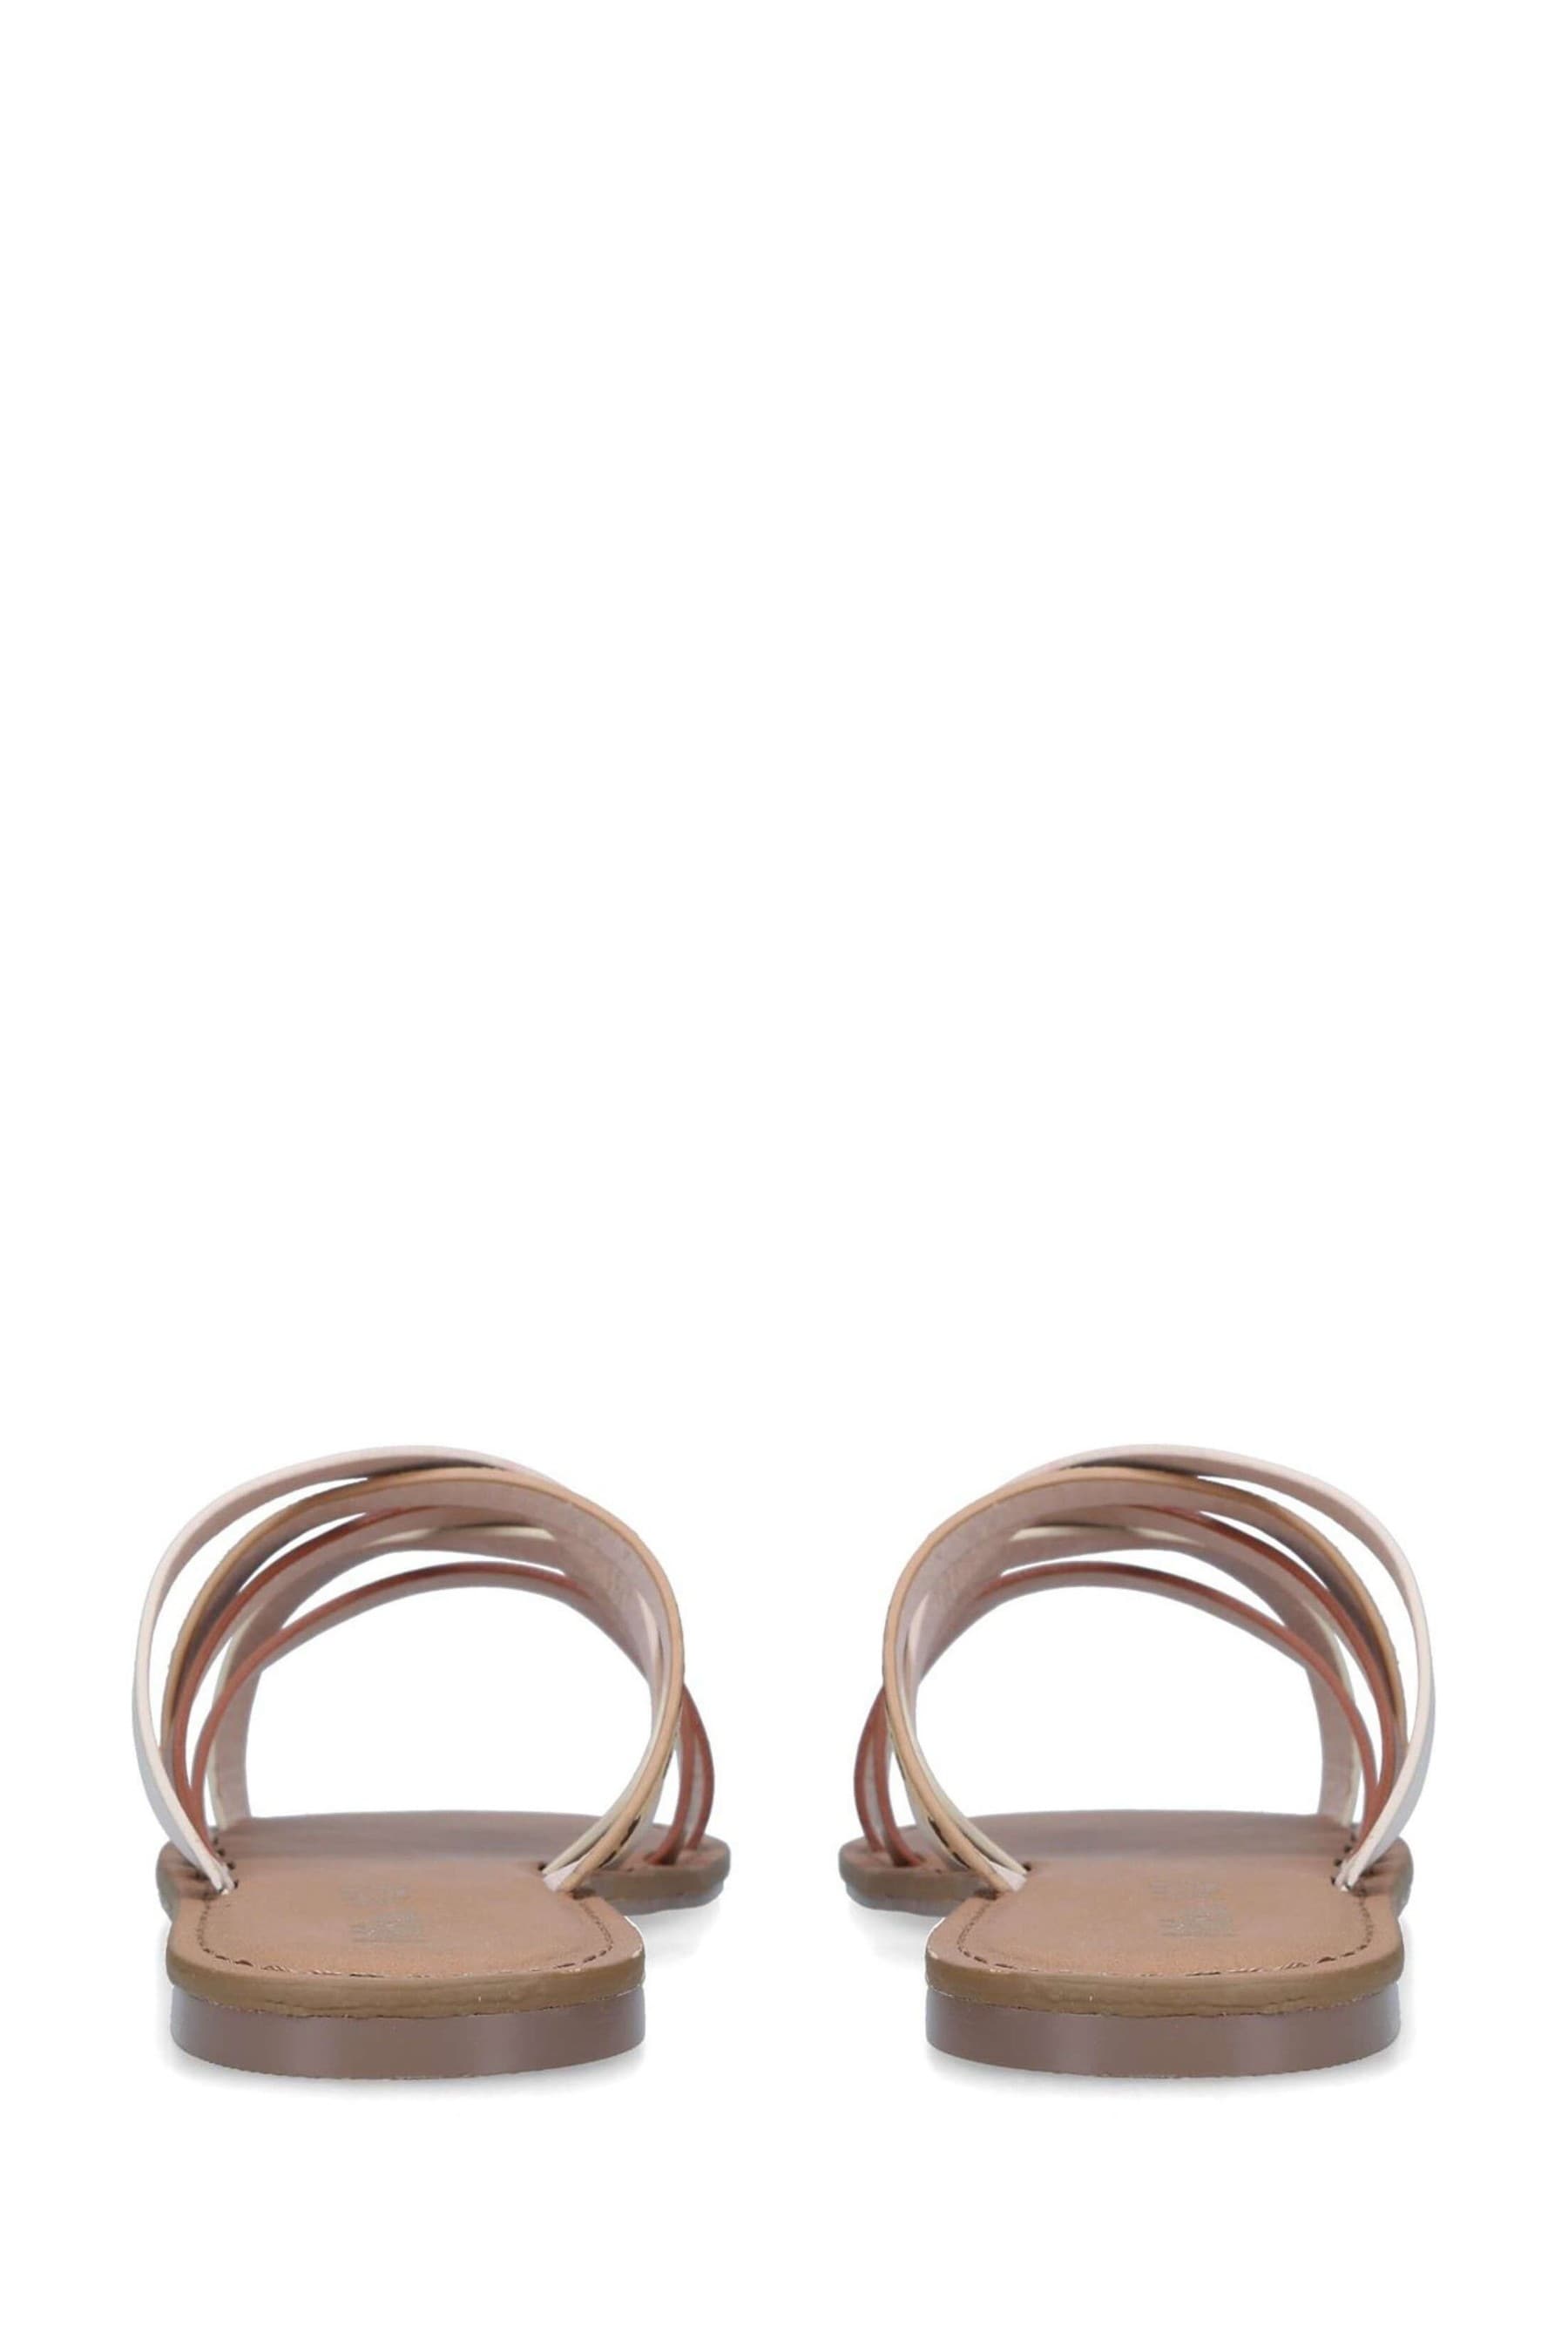 Buy Miss KG Nude Denver Sandals from the Next UK online shop